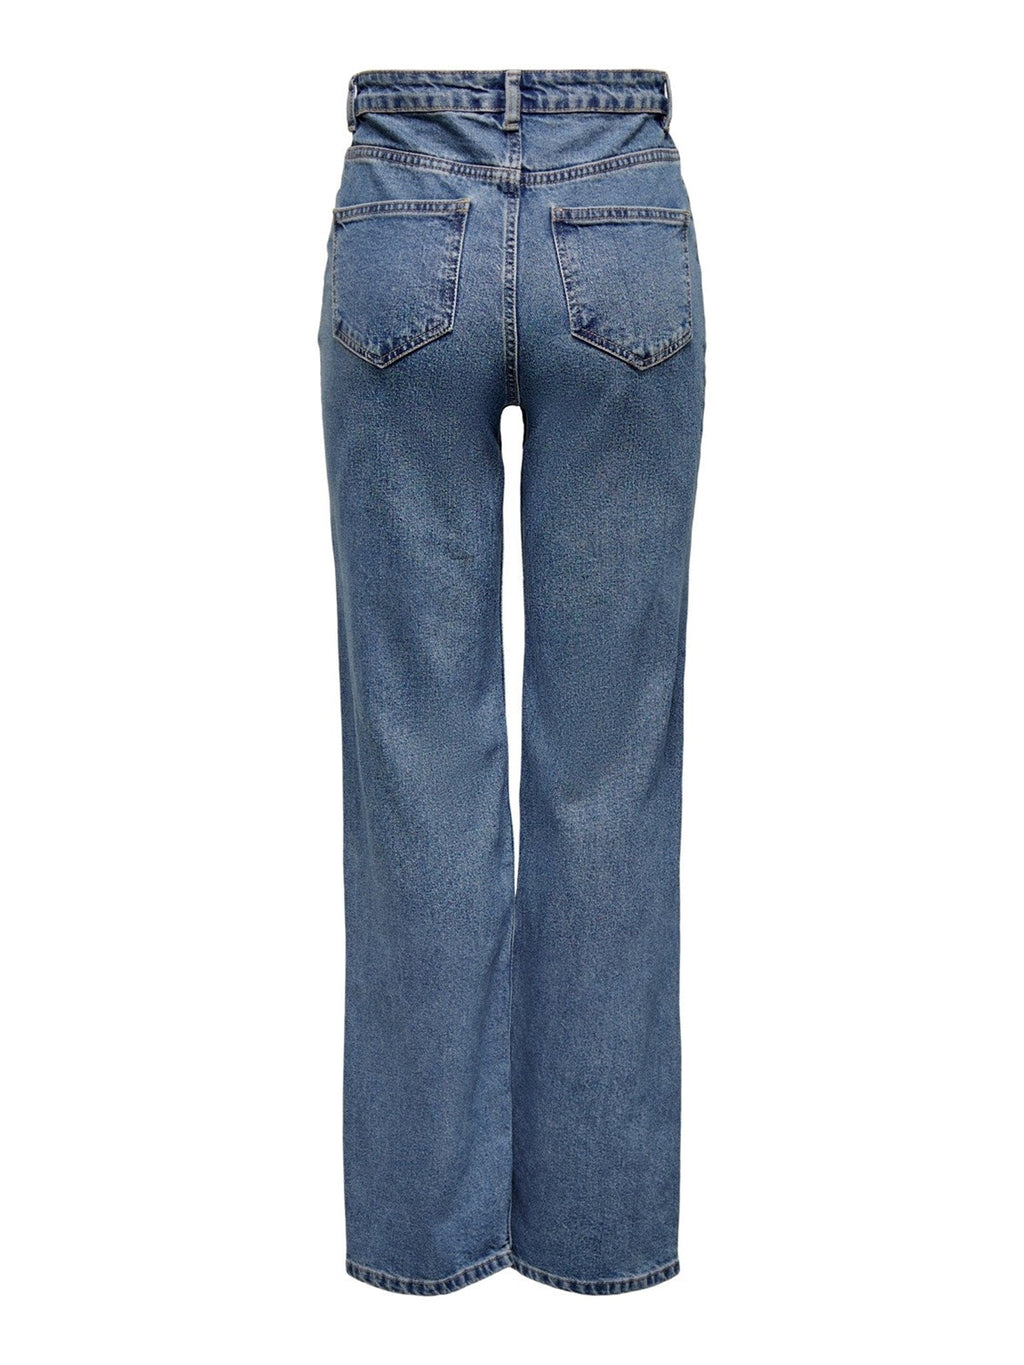 Jeans de pierna ancha de Camille - mezclilla azul